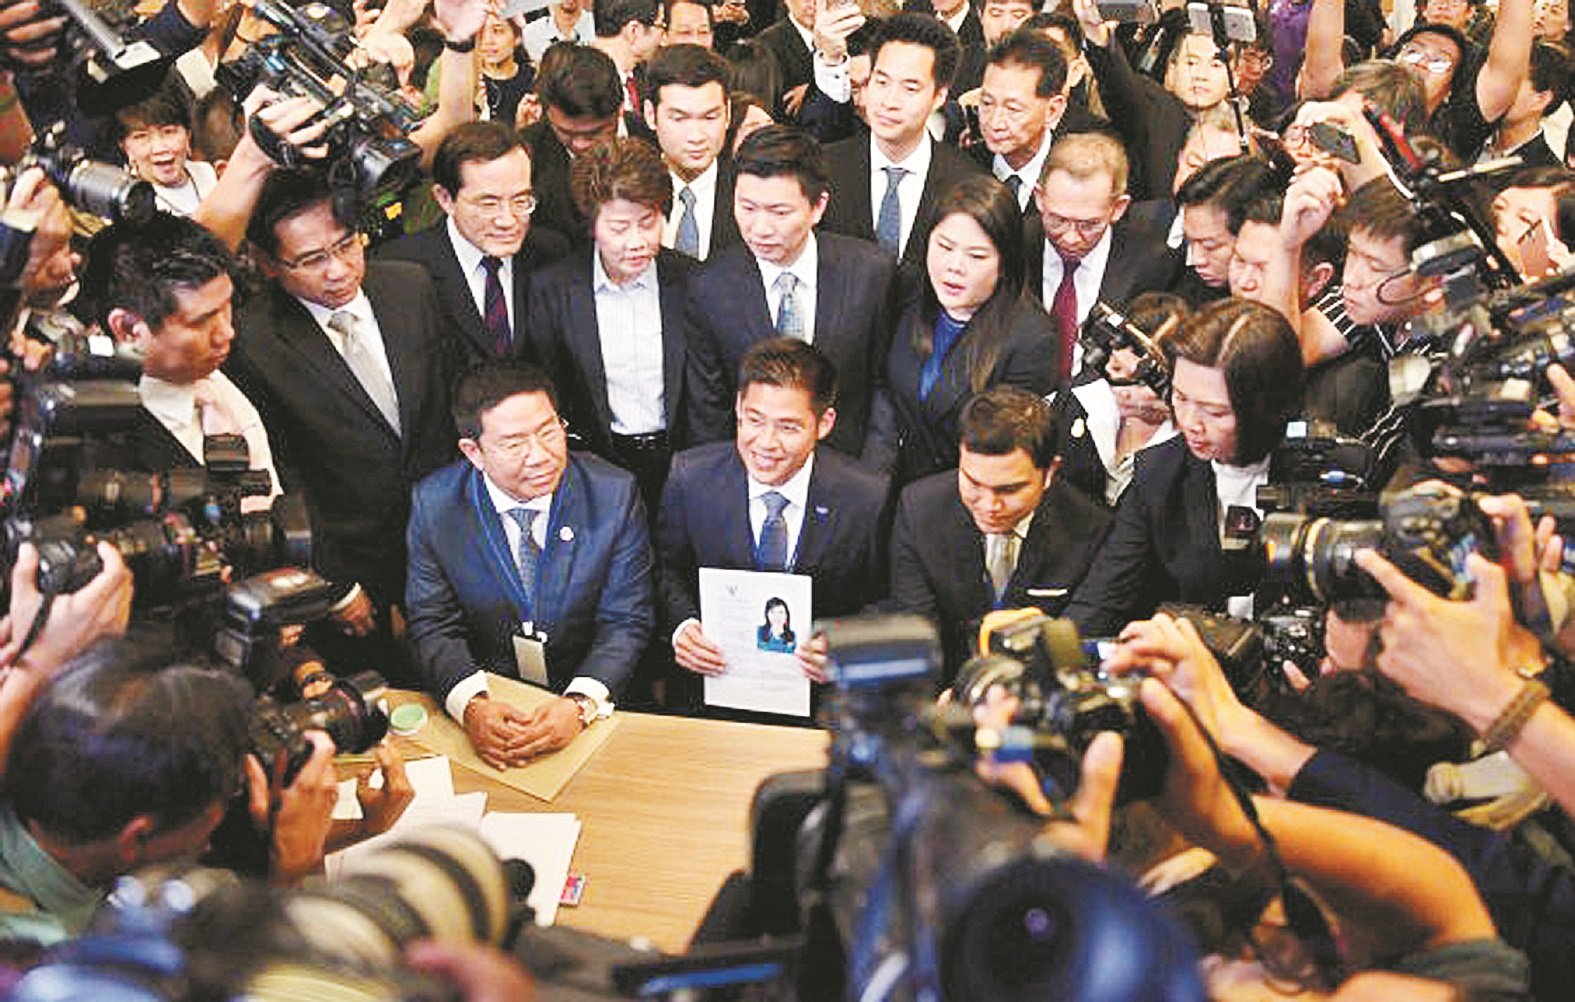 泰爱国党党魁布伊查普（前排中），周五向曼谷选举委员会官员，提交乌汶叻公主的选举登记表格，现场有大批媒体记者包围拍照采访。